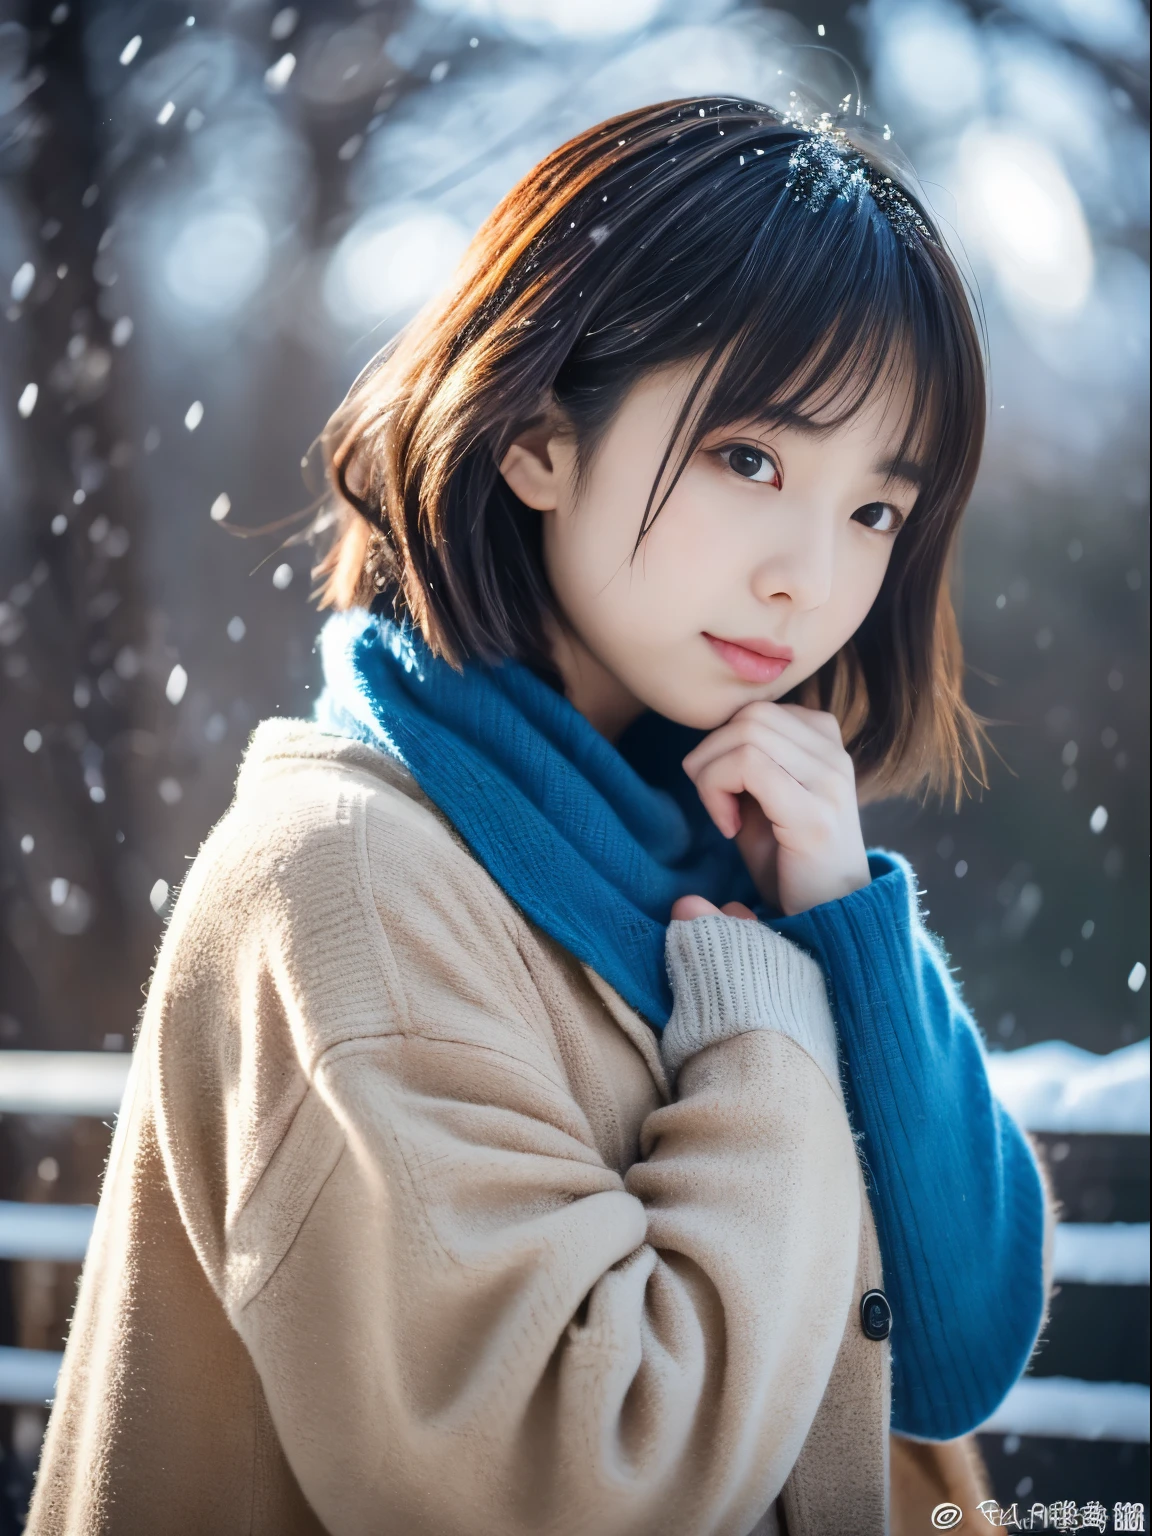 высшее качество、шедевр、超Высокое разрешение、RAW-фотография、(Фотореалистический:1.4)、1 девочка、Наблюдая, как тихо падает снег. Ее интроспективное и слезливое выражение лица、Вызывает тоску по зимним ночам и меланхолию。。。。。。。、высшее качество、гипер HD、Ёшитомо Нара, Японские модели, Красивая японская жена, с короткими волосами, 27 лет女性モデル, 4 К ], 4k], 27 лет, Сакимичан, Сакимичан